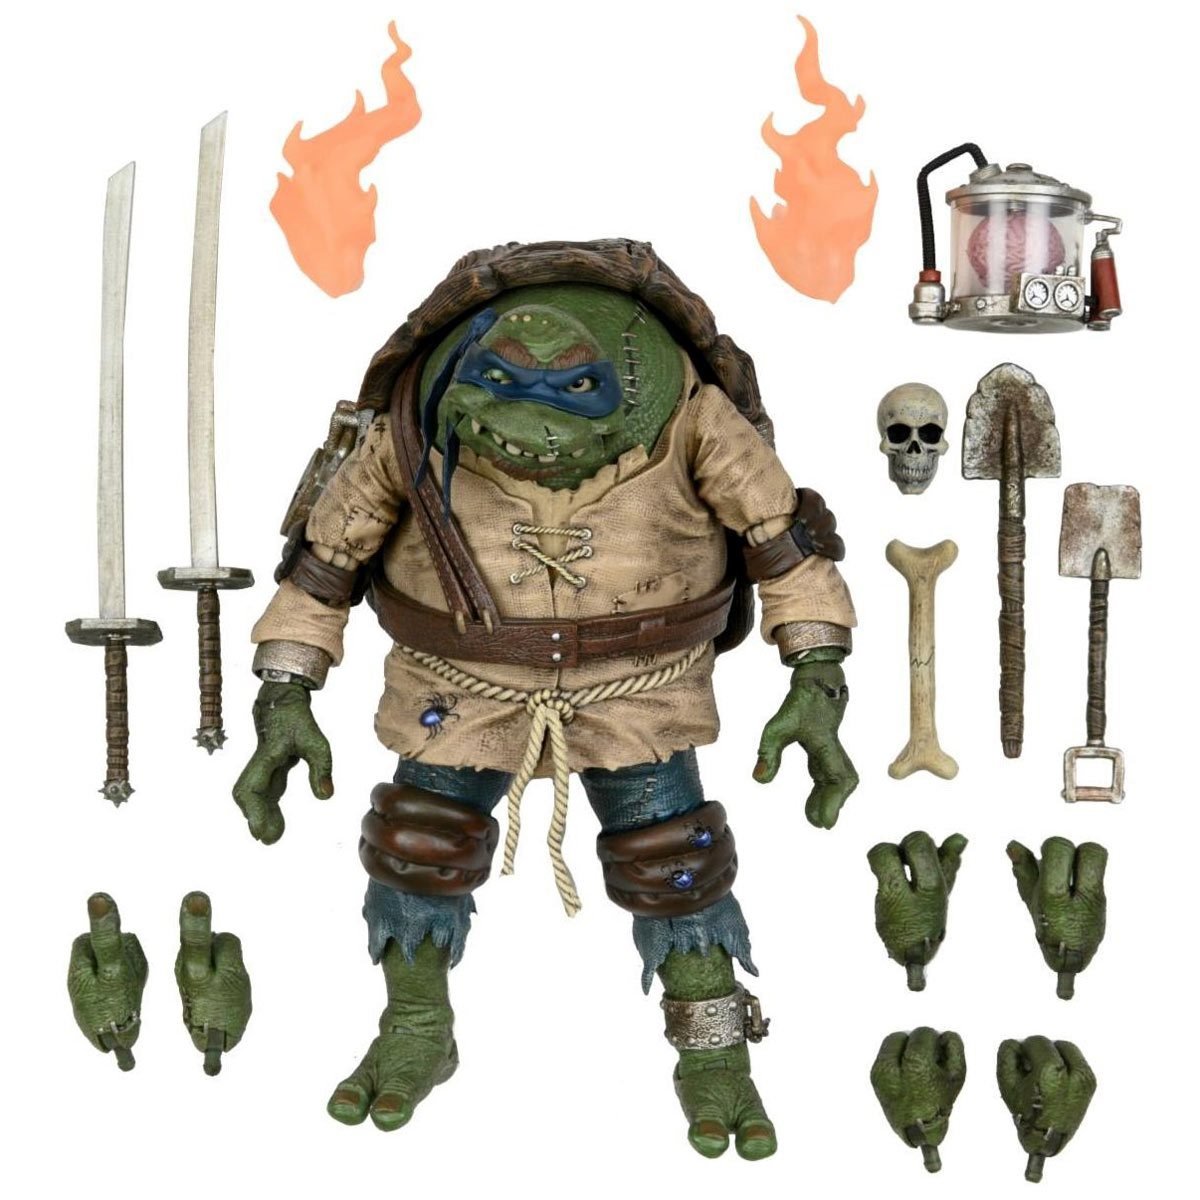 Neca Figura de Accion Ultimate: Universal Monsters x TMNT - Leonardo como El Jorobado 7 Pulgadas